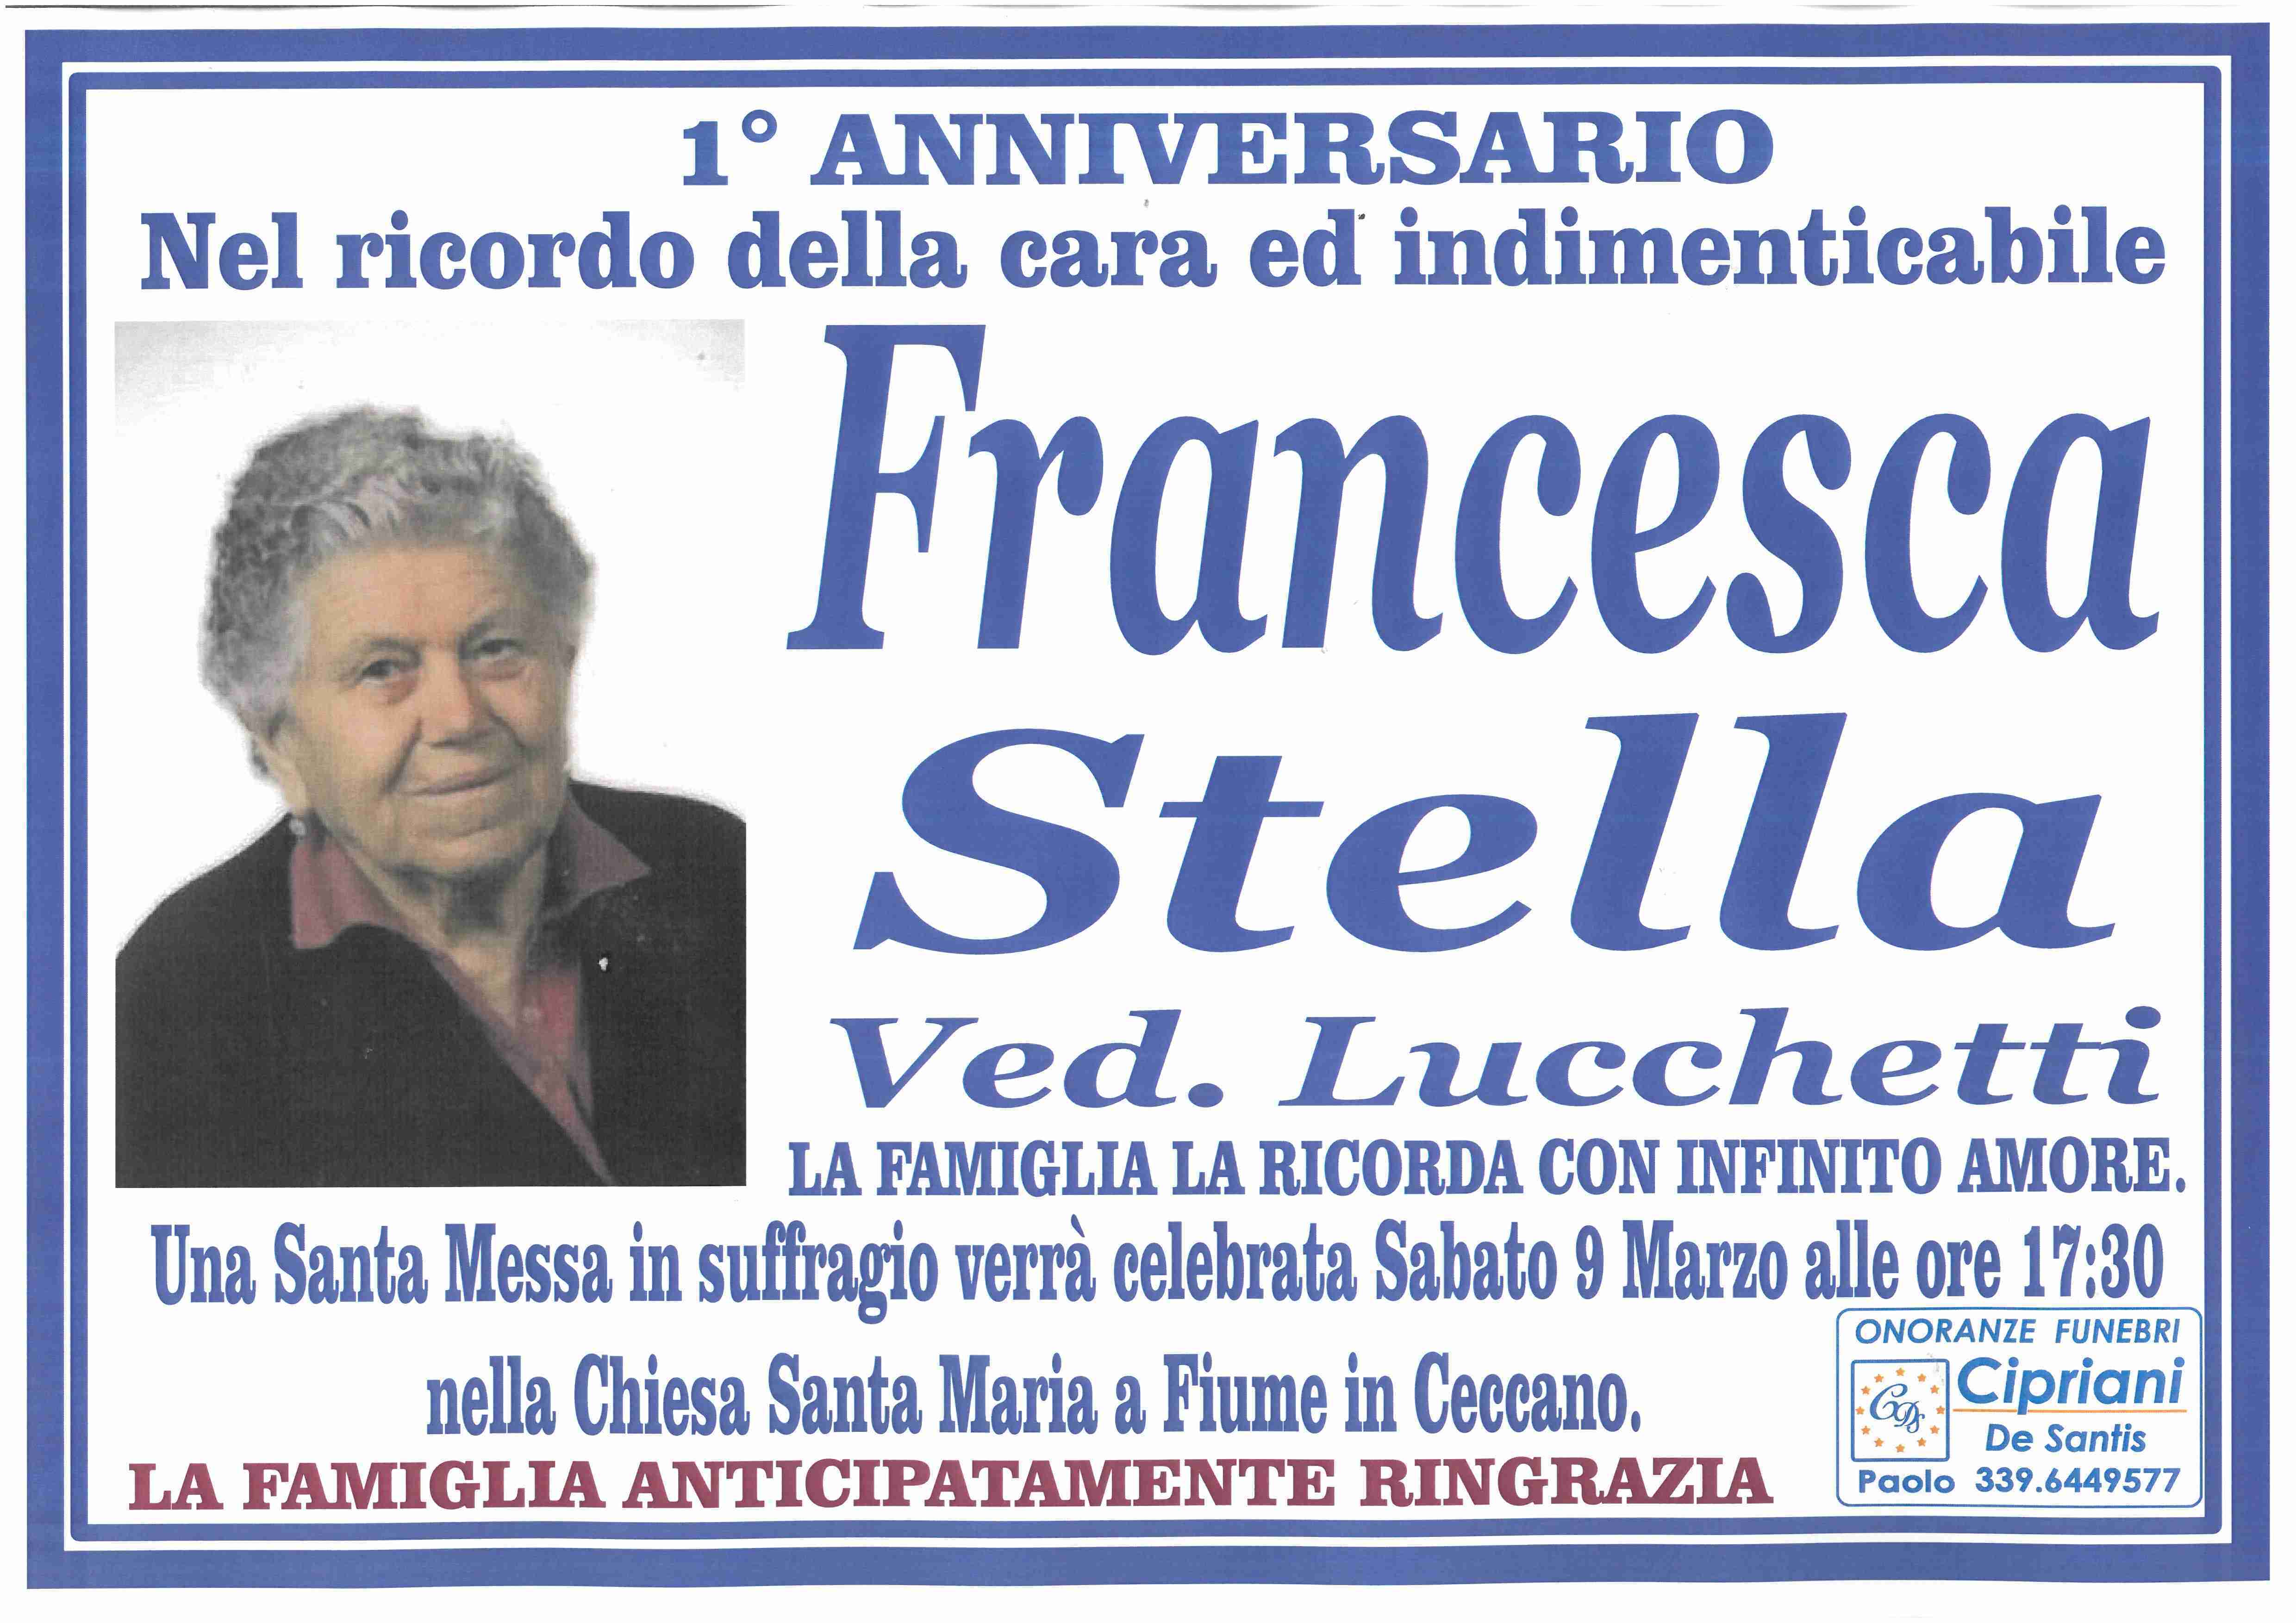 Francesca Stella